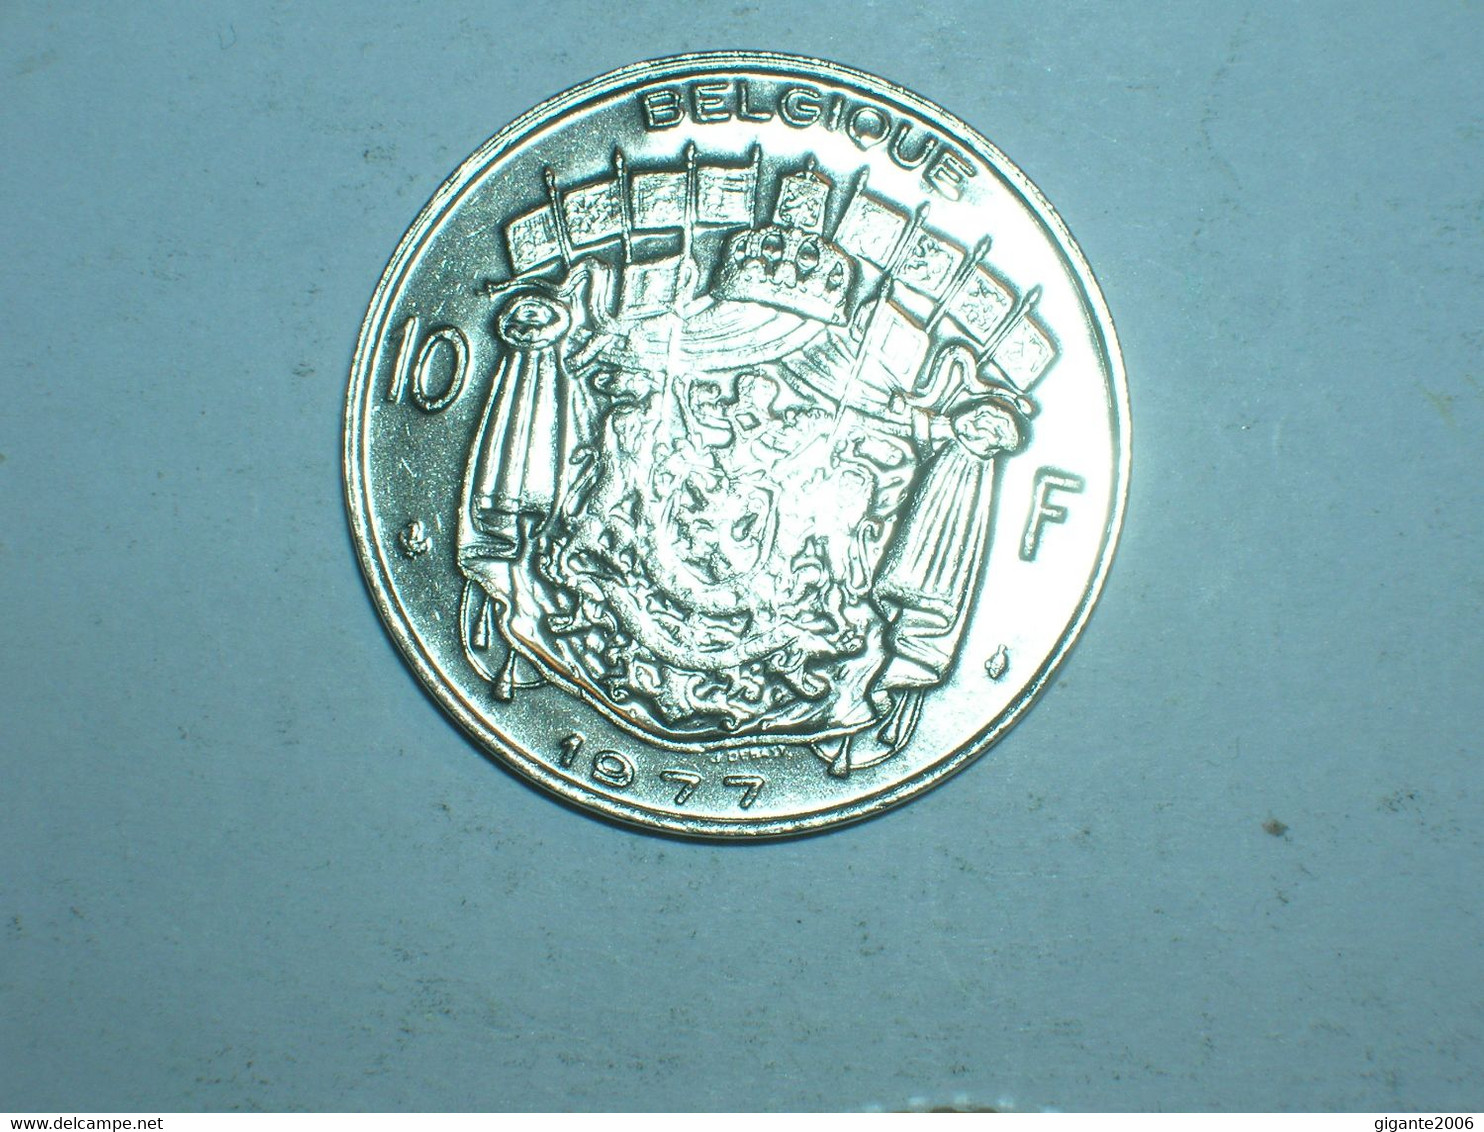 BELGICA 10 FRANCOS 1977 FR  (9266) - 10 Francs